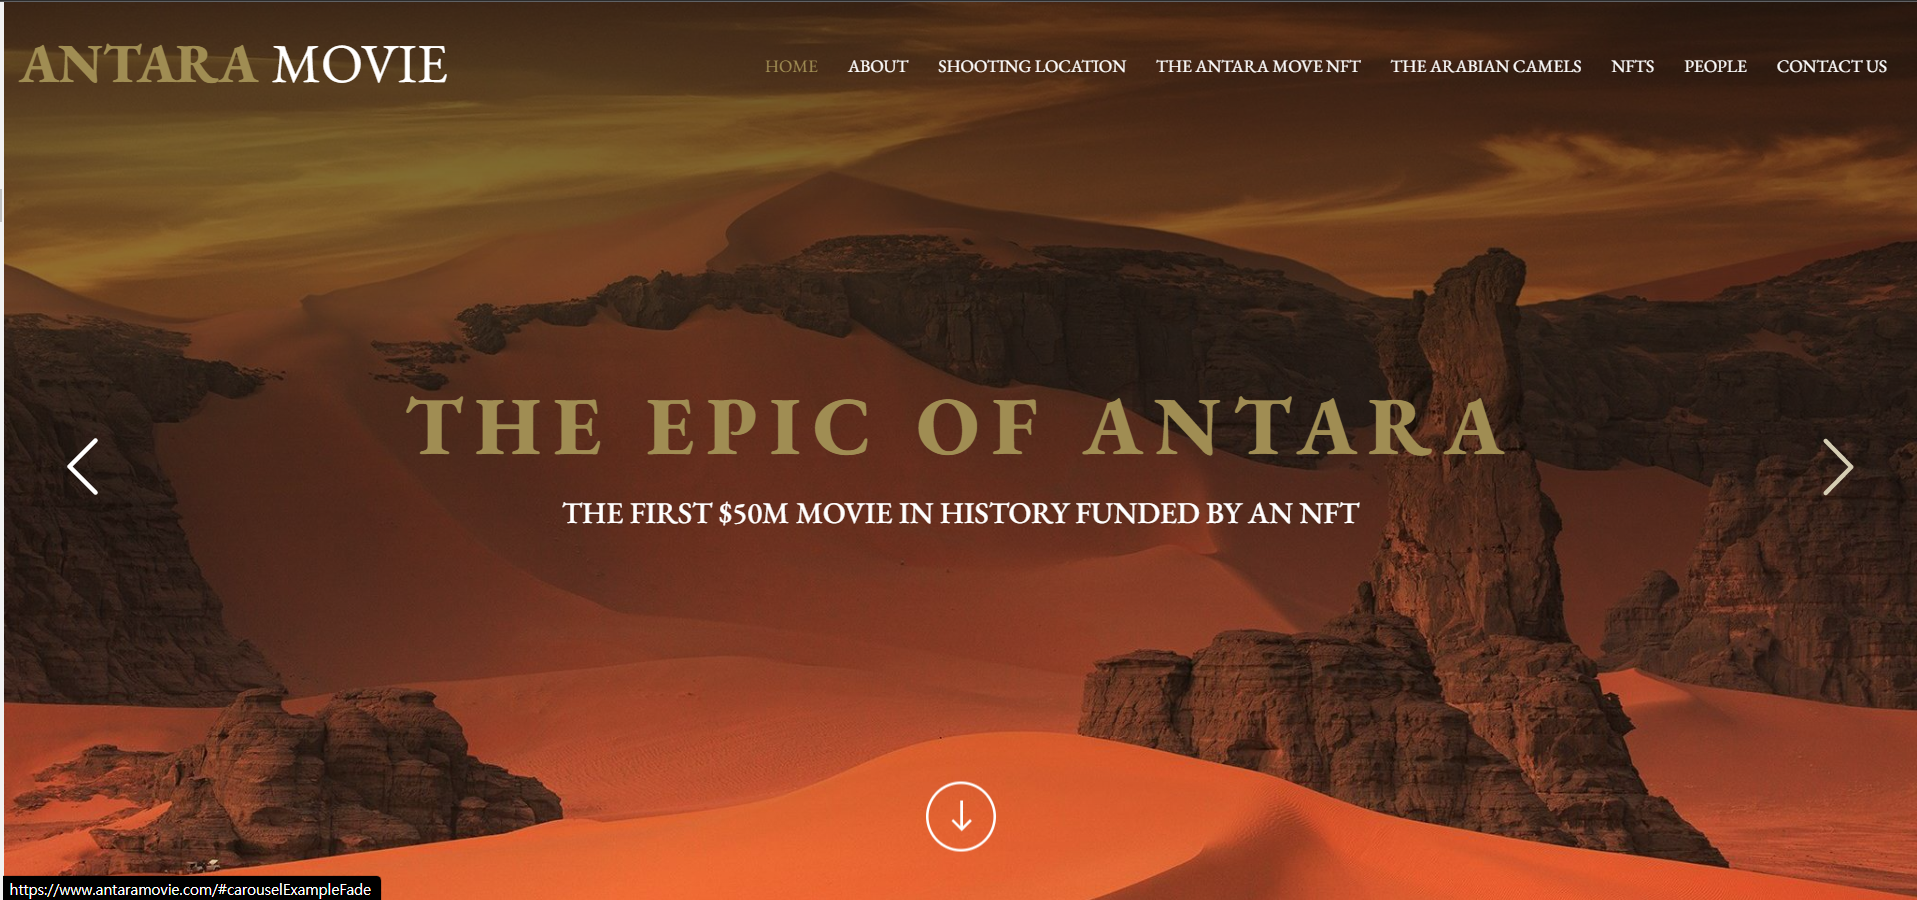 Antara 홈페이지의 첫 화면, 영화 사이트인지 금융 사이트인지 모르겠네요.